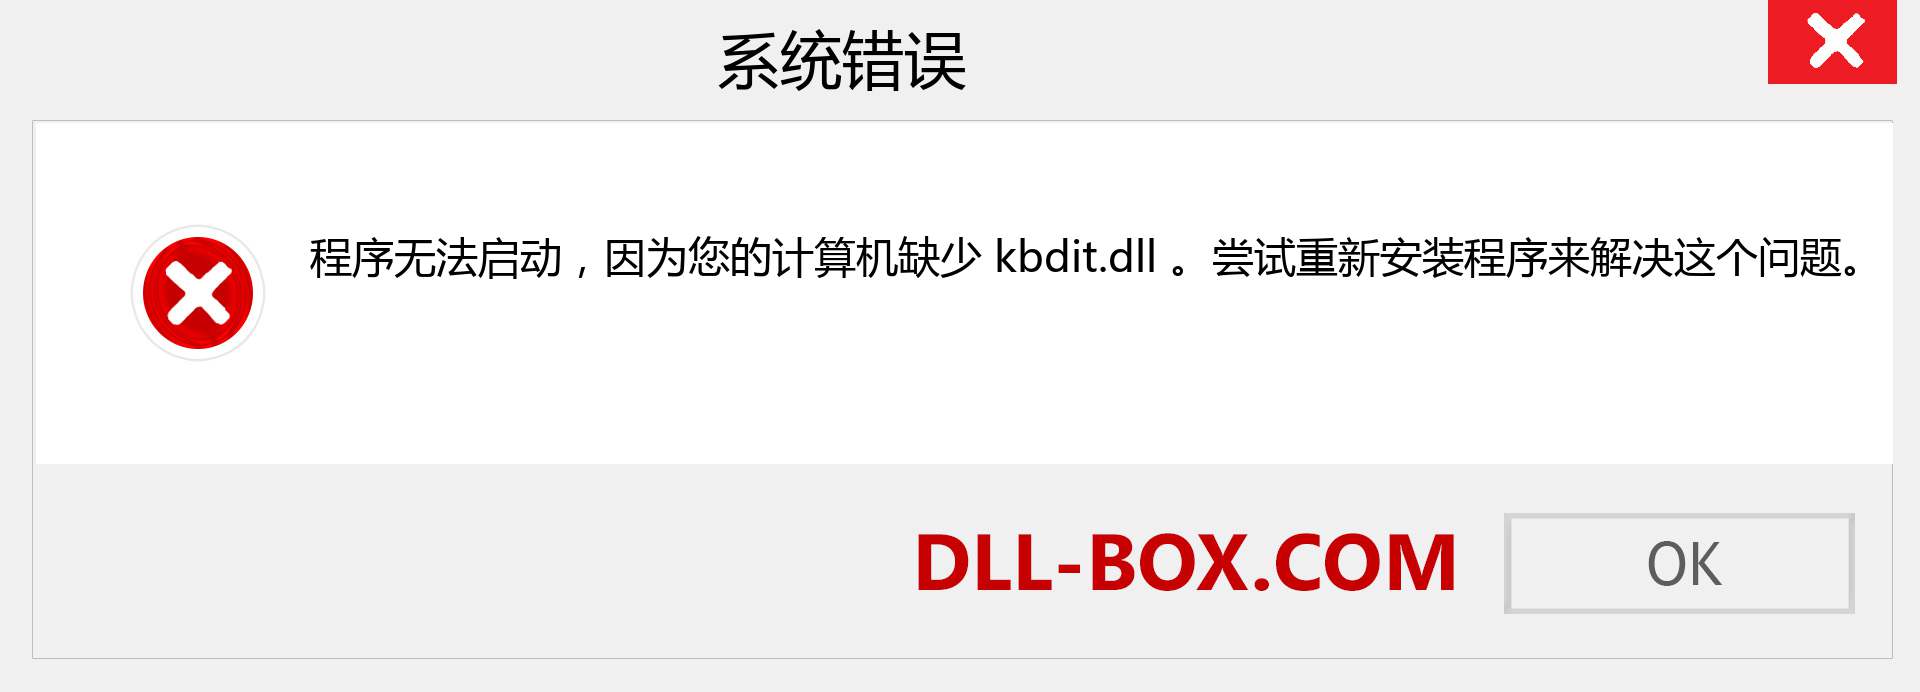 kbdit.dll 文件丢失？。 适用于 Windows 7、8、10 的下载 - 修复 Windows、照片、图像上的 kbdit dll 丢失错误